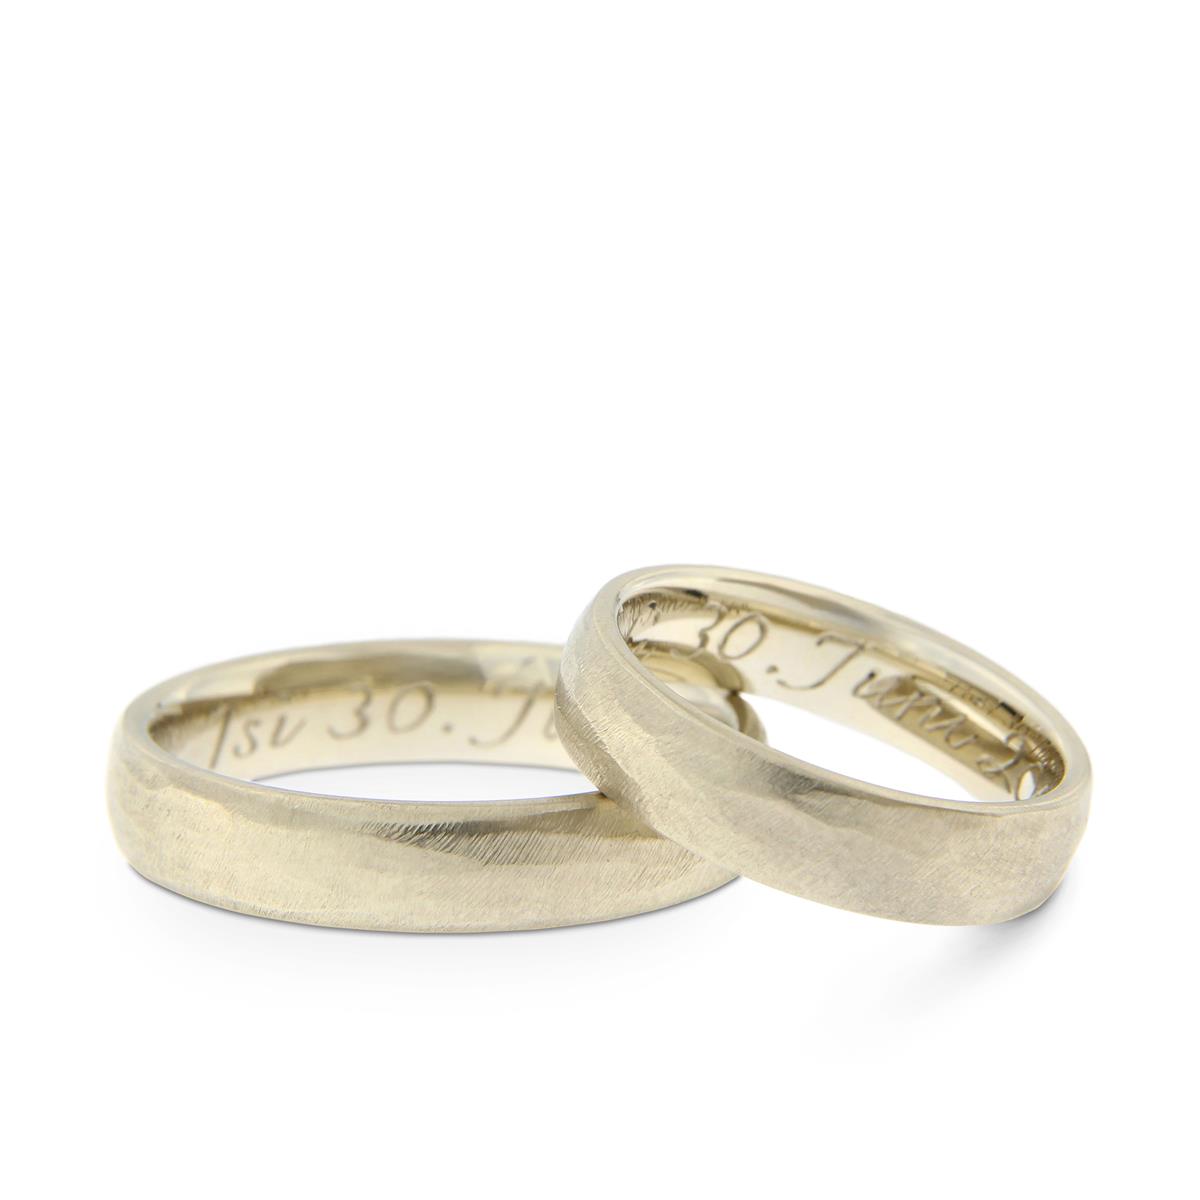 Katie g. Jewellery – Wedding - Damen und Herrenring in Oval in 14kt. natürliches Weißgold in unterschiedlichen Formaten